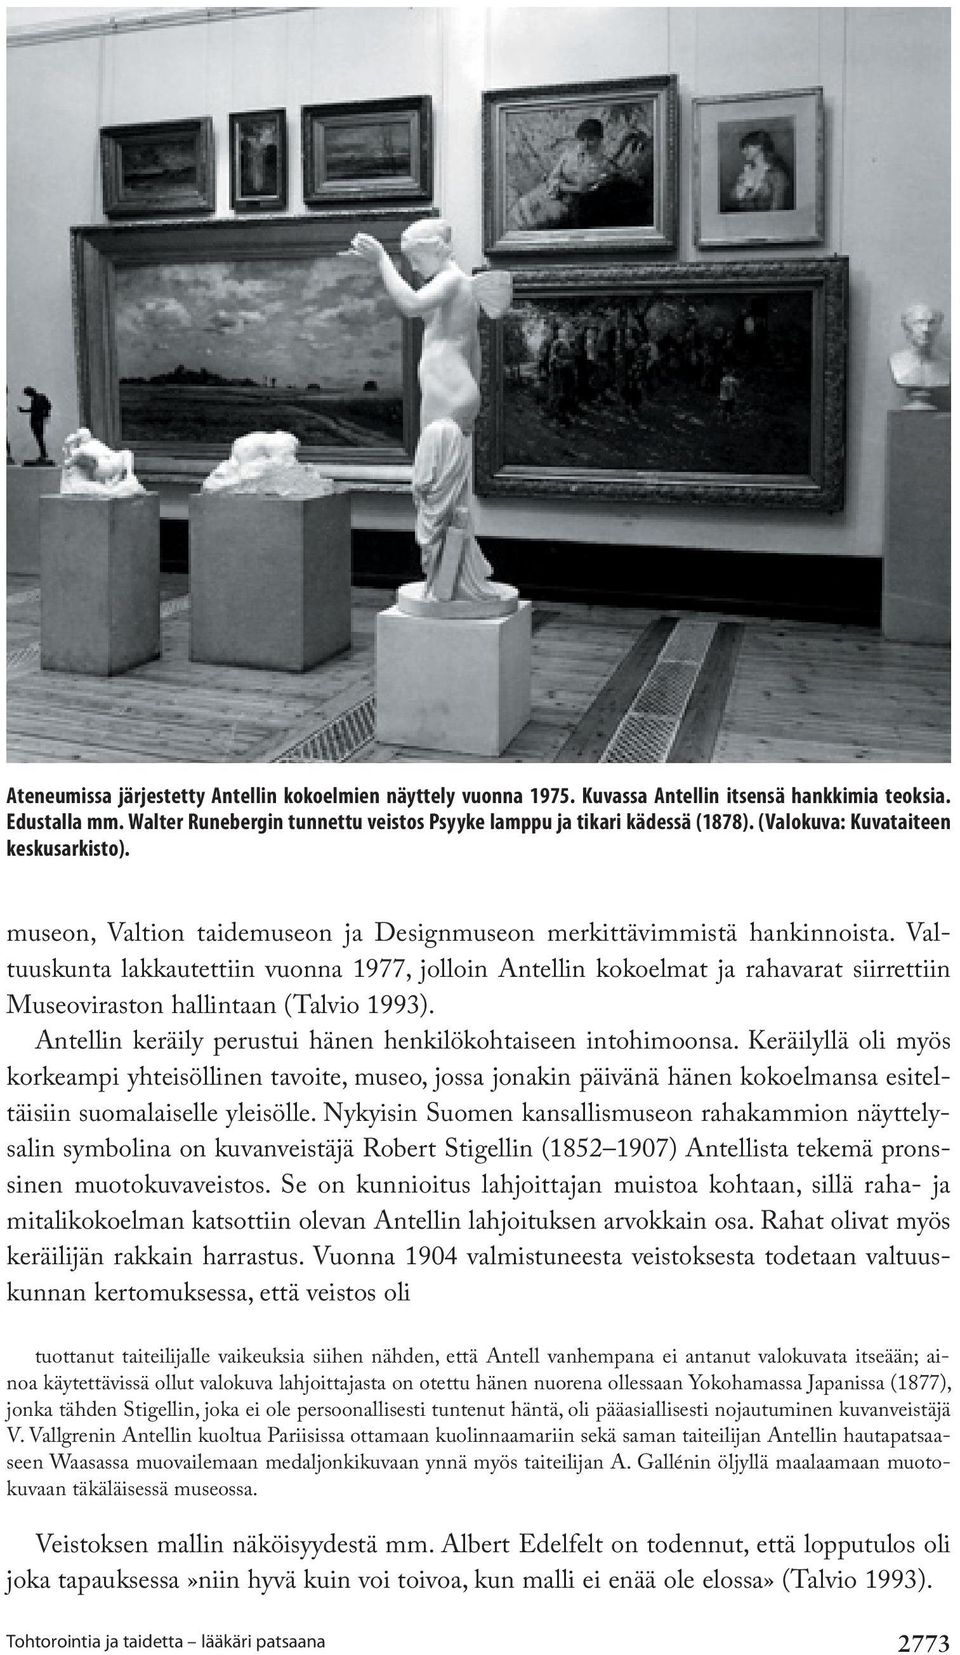 Valtuuskunta lakkautettiin vuonna 1977, jolloin Antellin kokoelmat ja rahavarat siirrettiin Museoviraston hallintaan (Talvio 1993). Antellin keräily perustui hänen henkilökohtaiseen intohimoonsa.